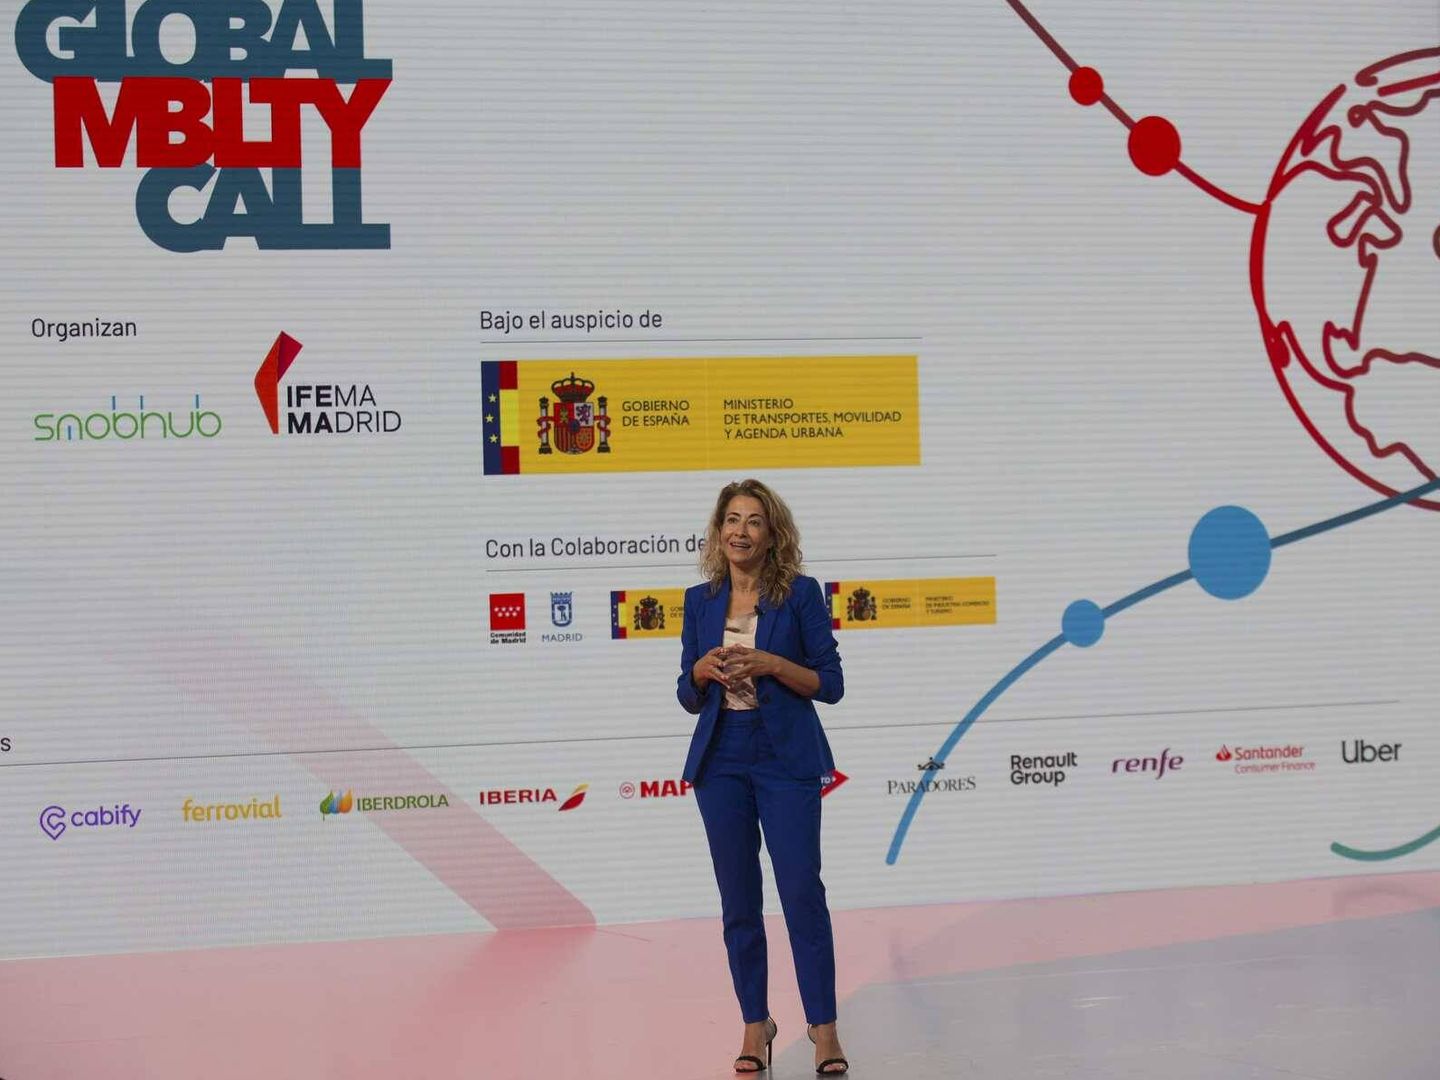 La presentación de Global Mobility Call fue la primera intervención de Raquel Sánchez como nueva ministra de Transportes.